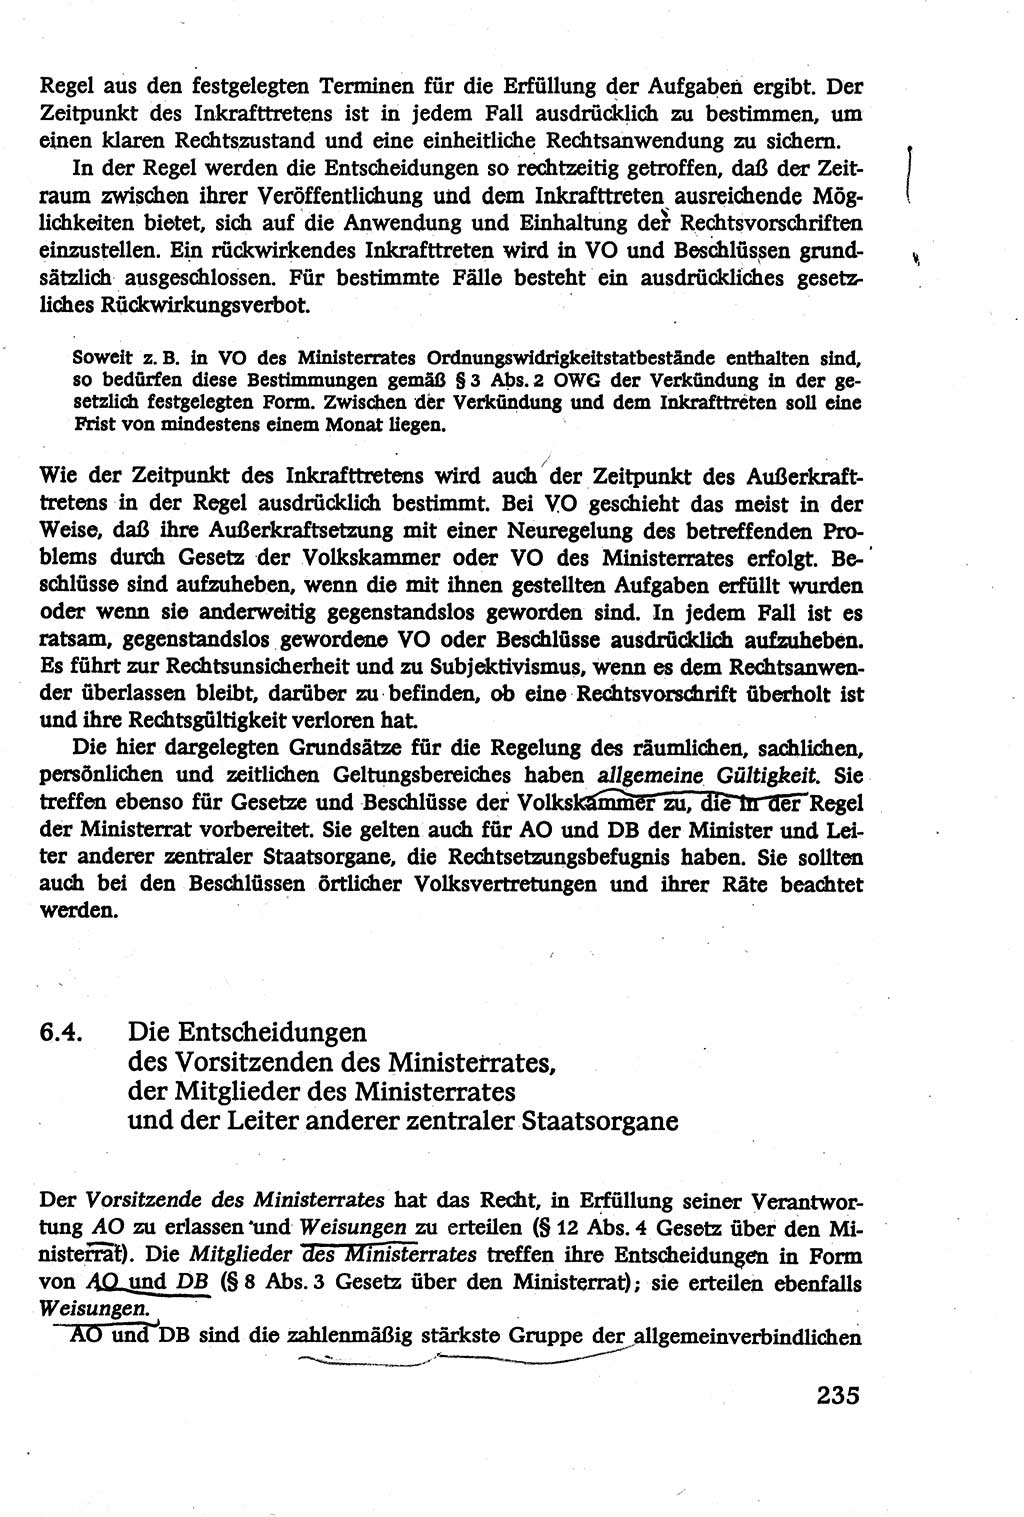 Verwaltungsrecht [Deutsche Demokratische Republik (DDR)], Lehrbuch 1979, Seite 235 (Verw.-R. DDR Lb. 1979, S. 235)